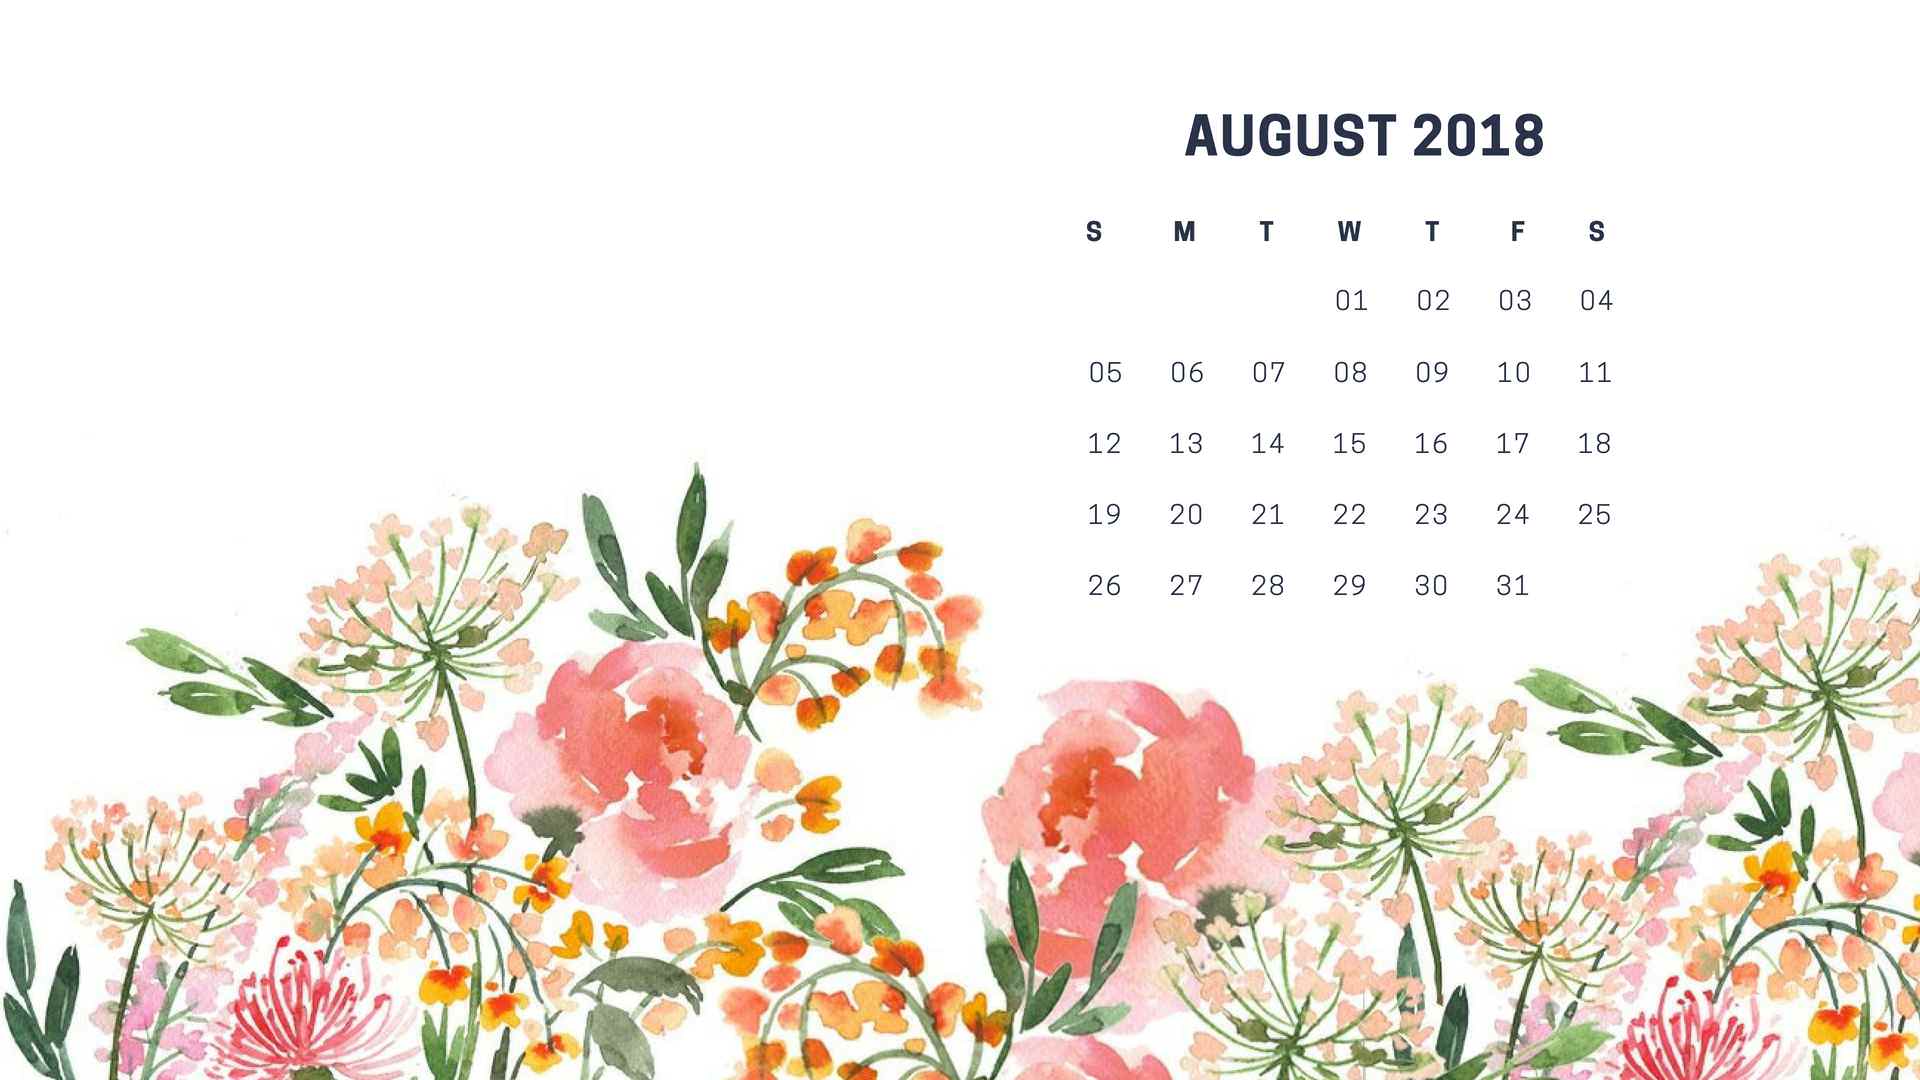 August 2018 Calendar Wallpaper Desktop and Background